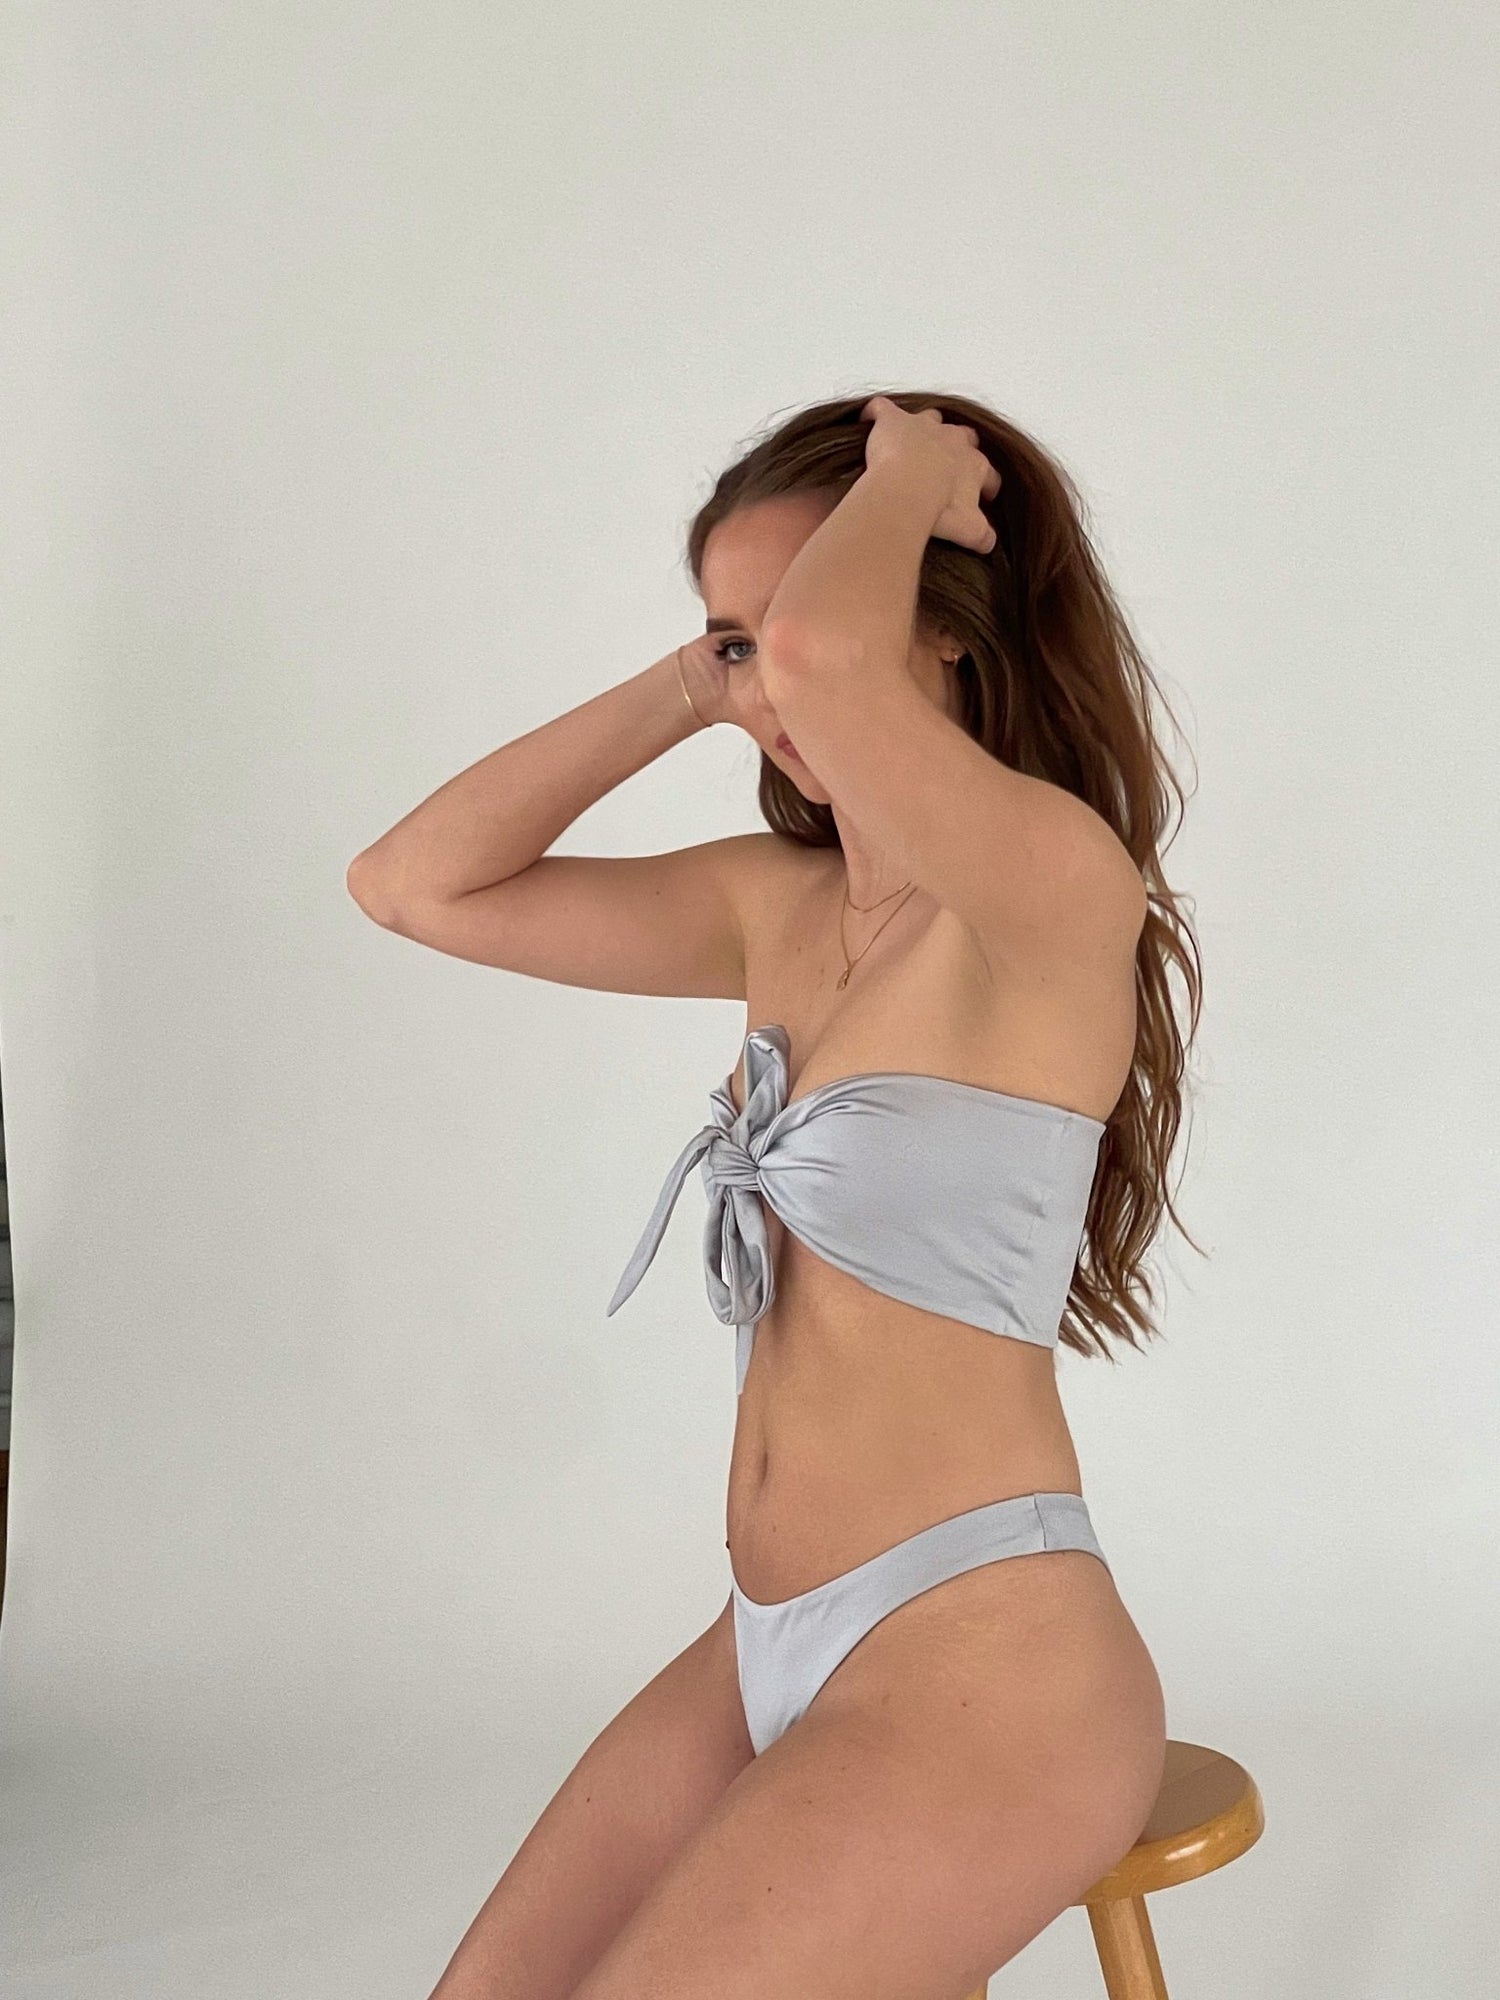 Filigrana bikini bottom - Blanche Olia